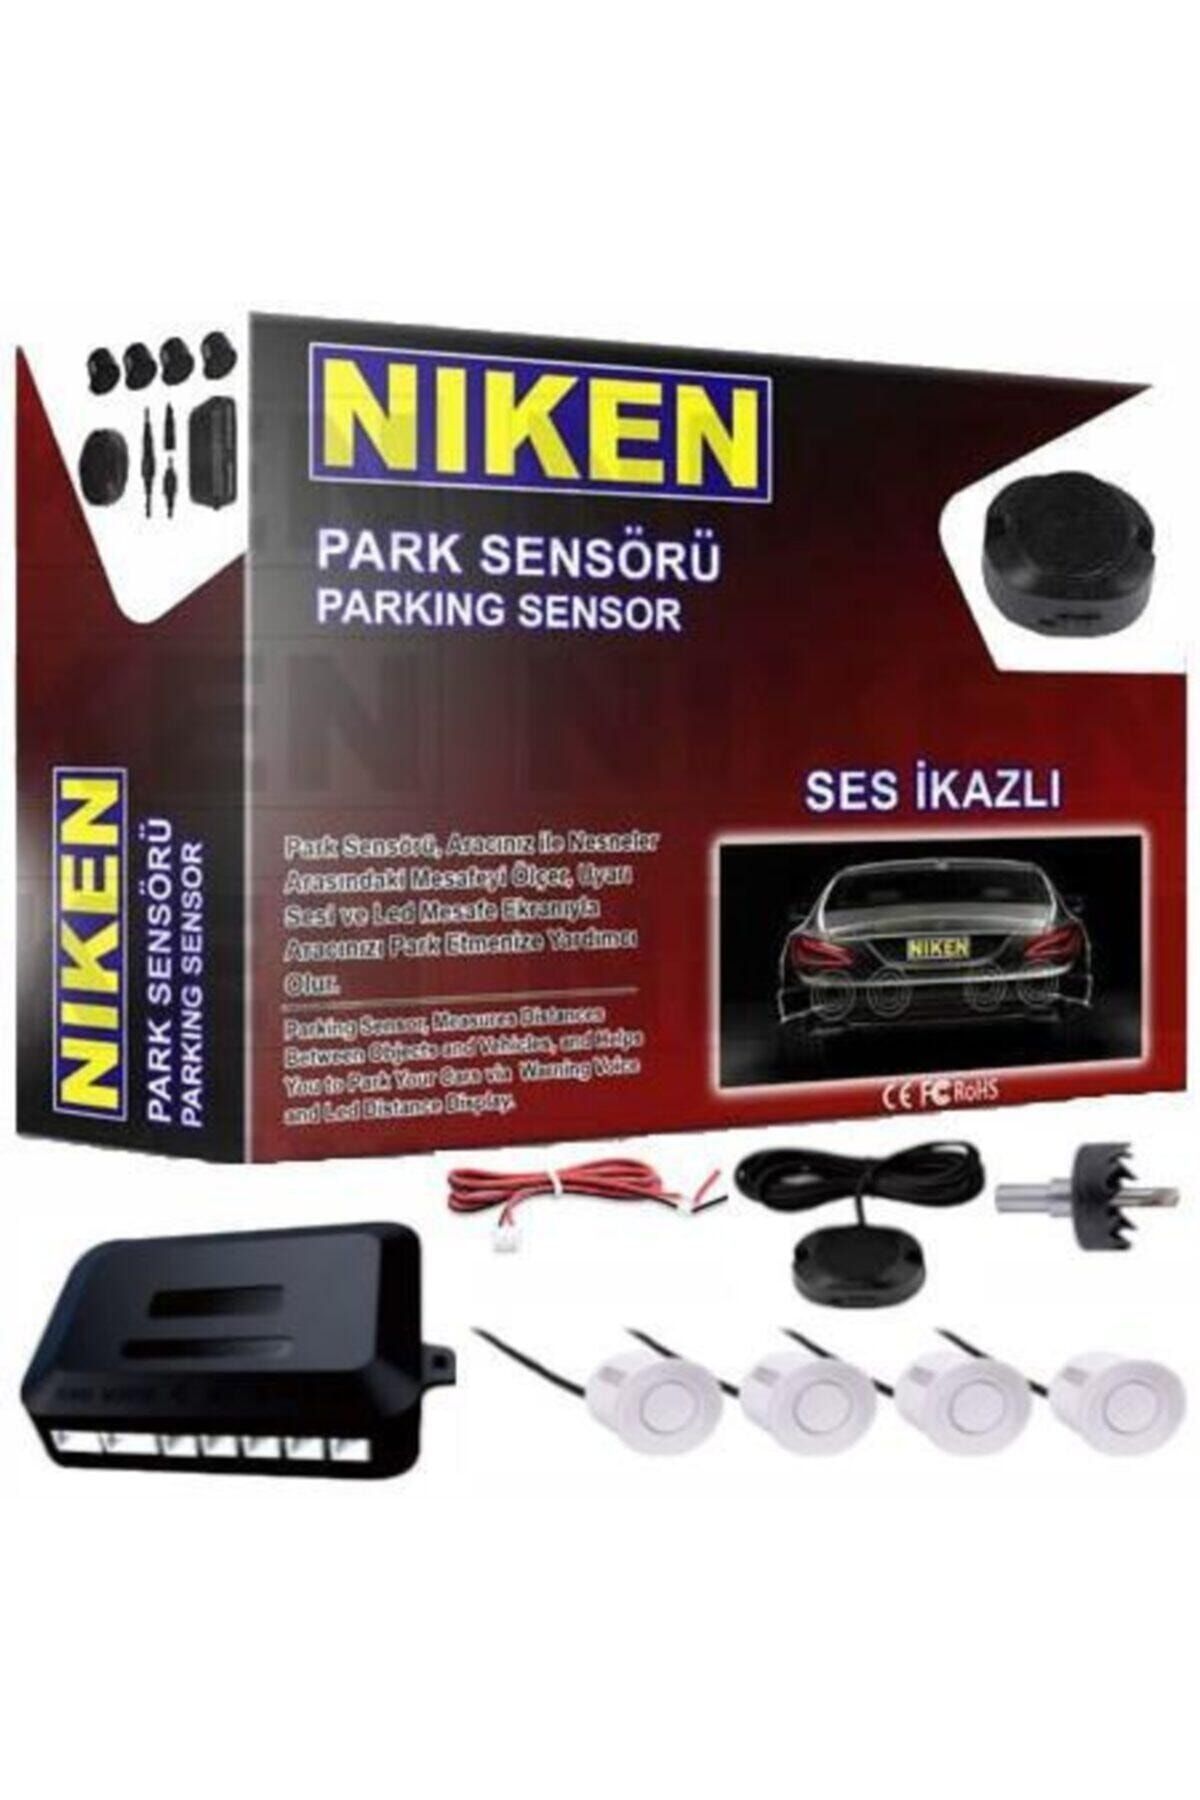 Niken Park Sensörü Ses Ikazlı 22mm Beyaz Sensör